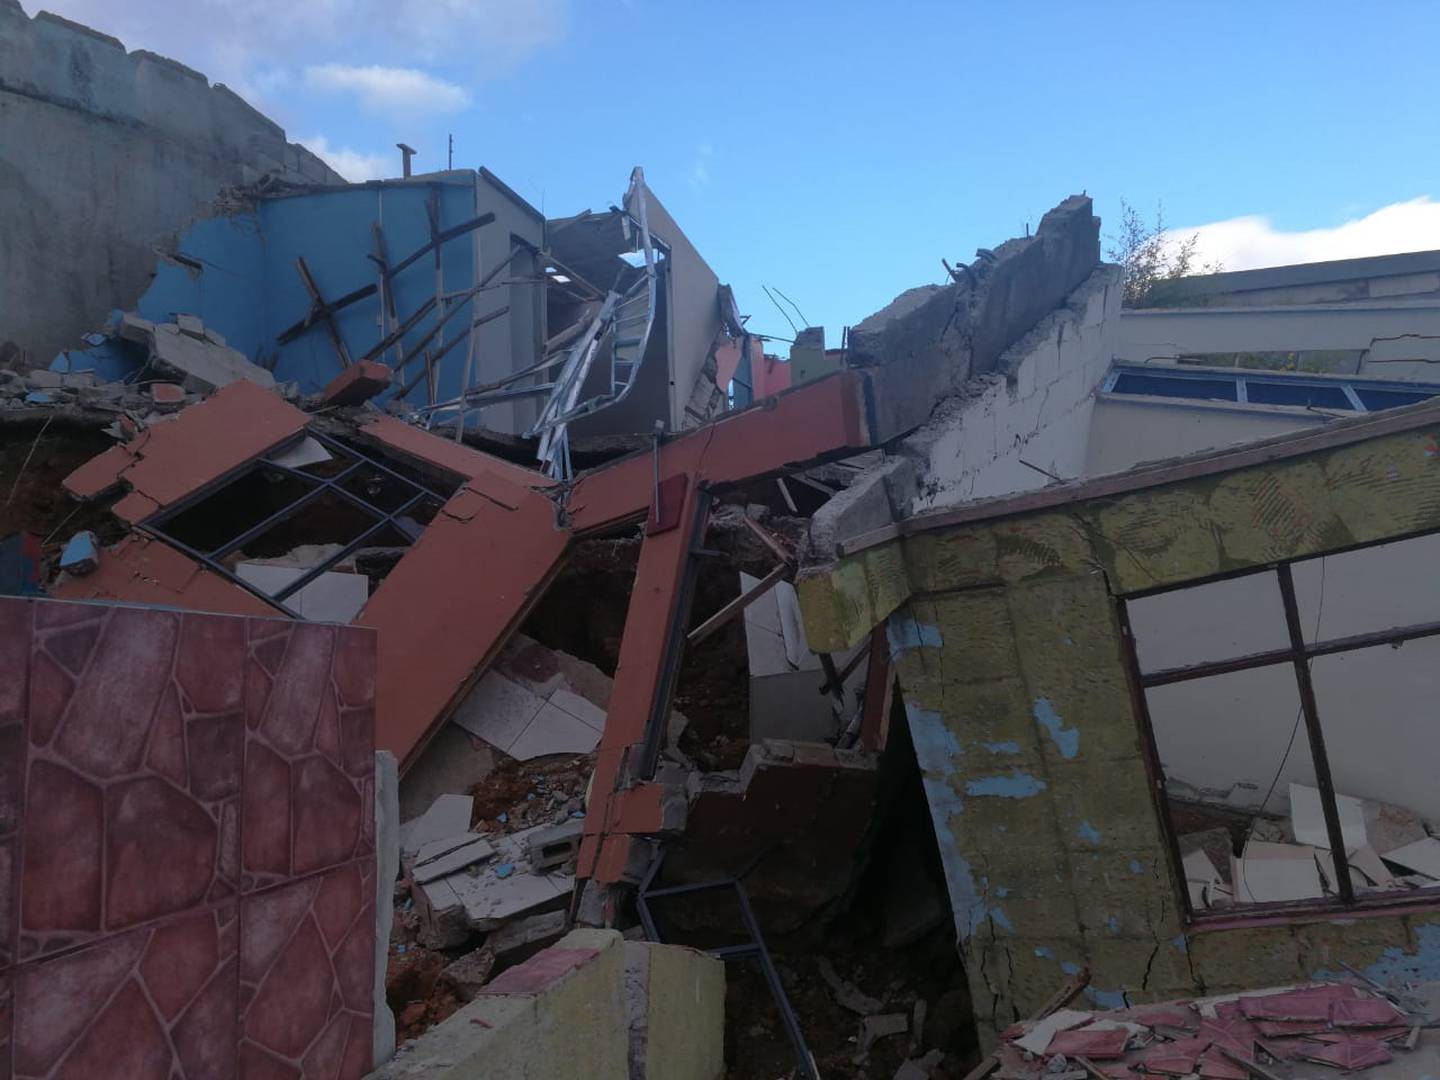 Casas destruidas por deslizamiento en urbanización Valladolid en Desamparados. Foto cortesía Marisol Soto.